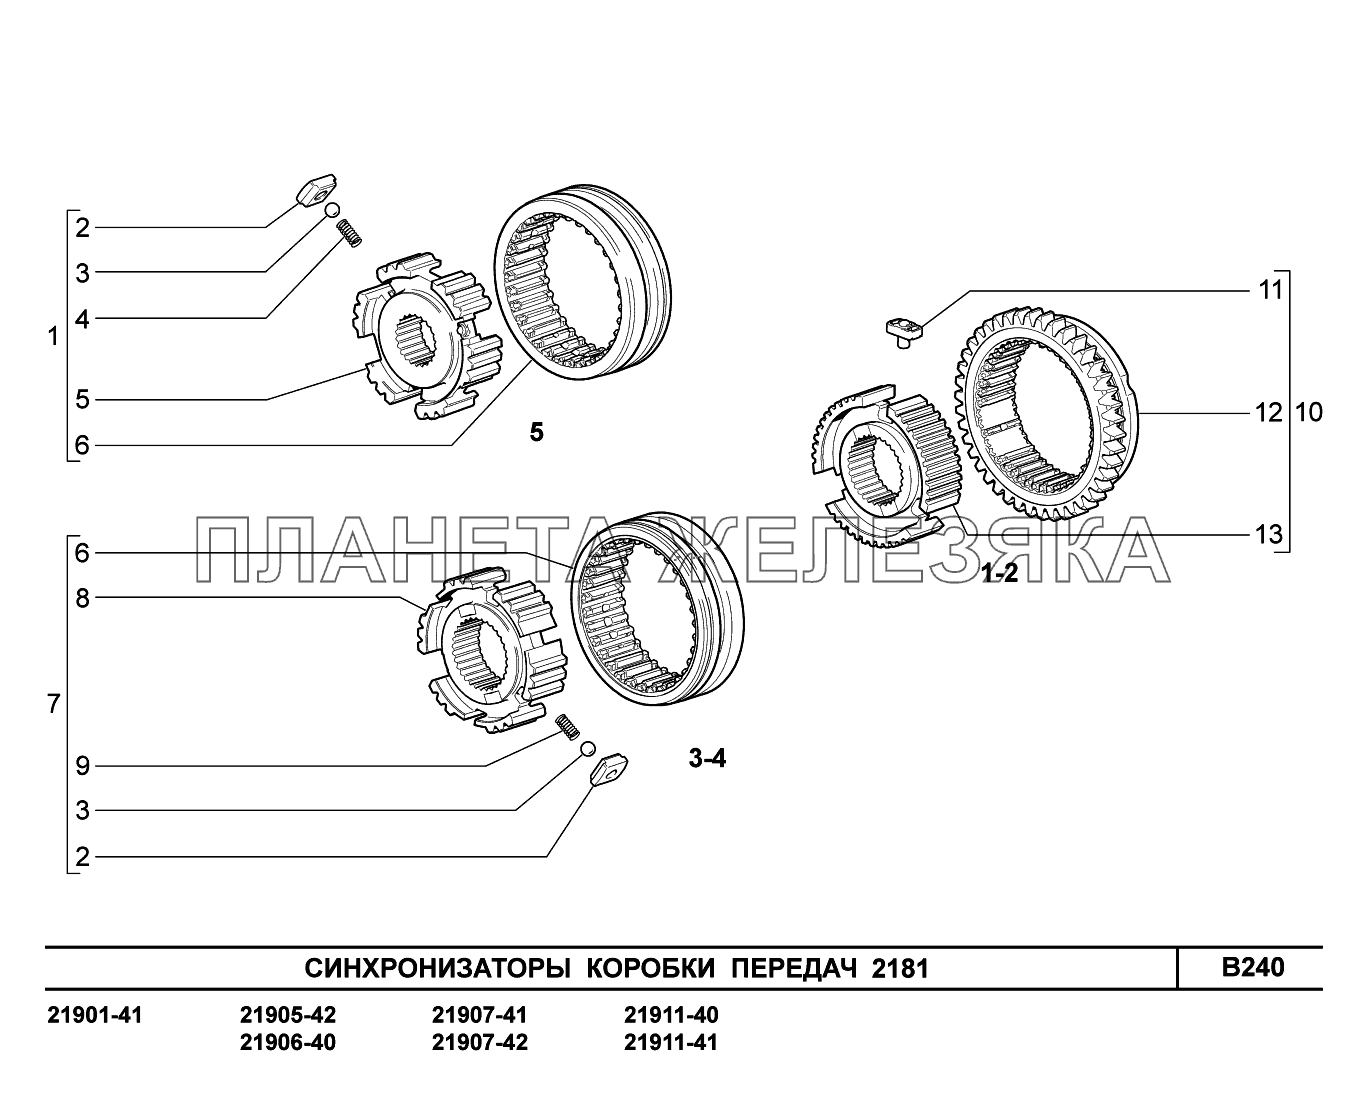 B240. Синхронизаторы коробки передач Lada Granta-2190